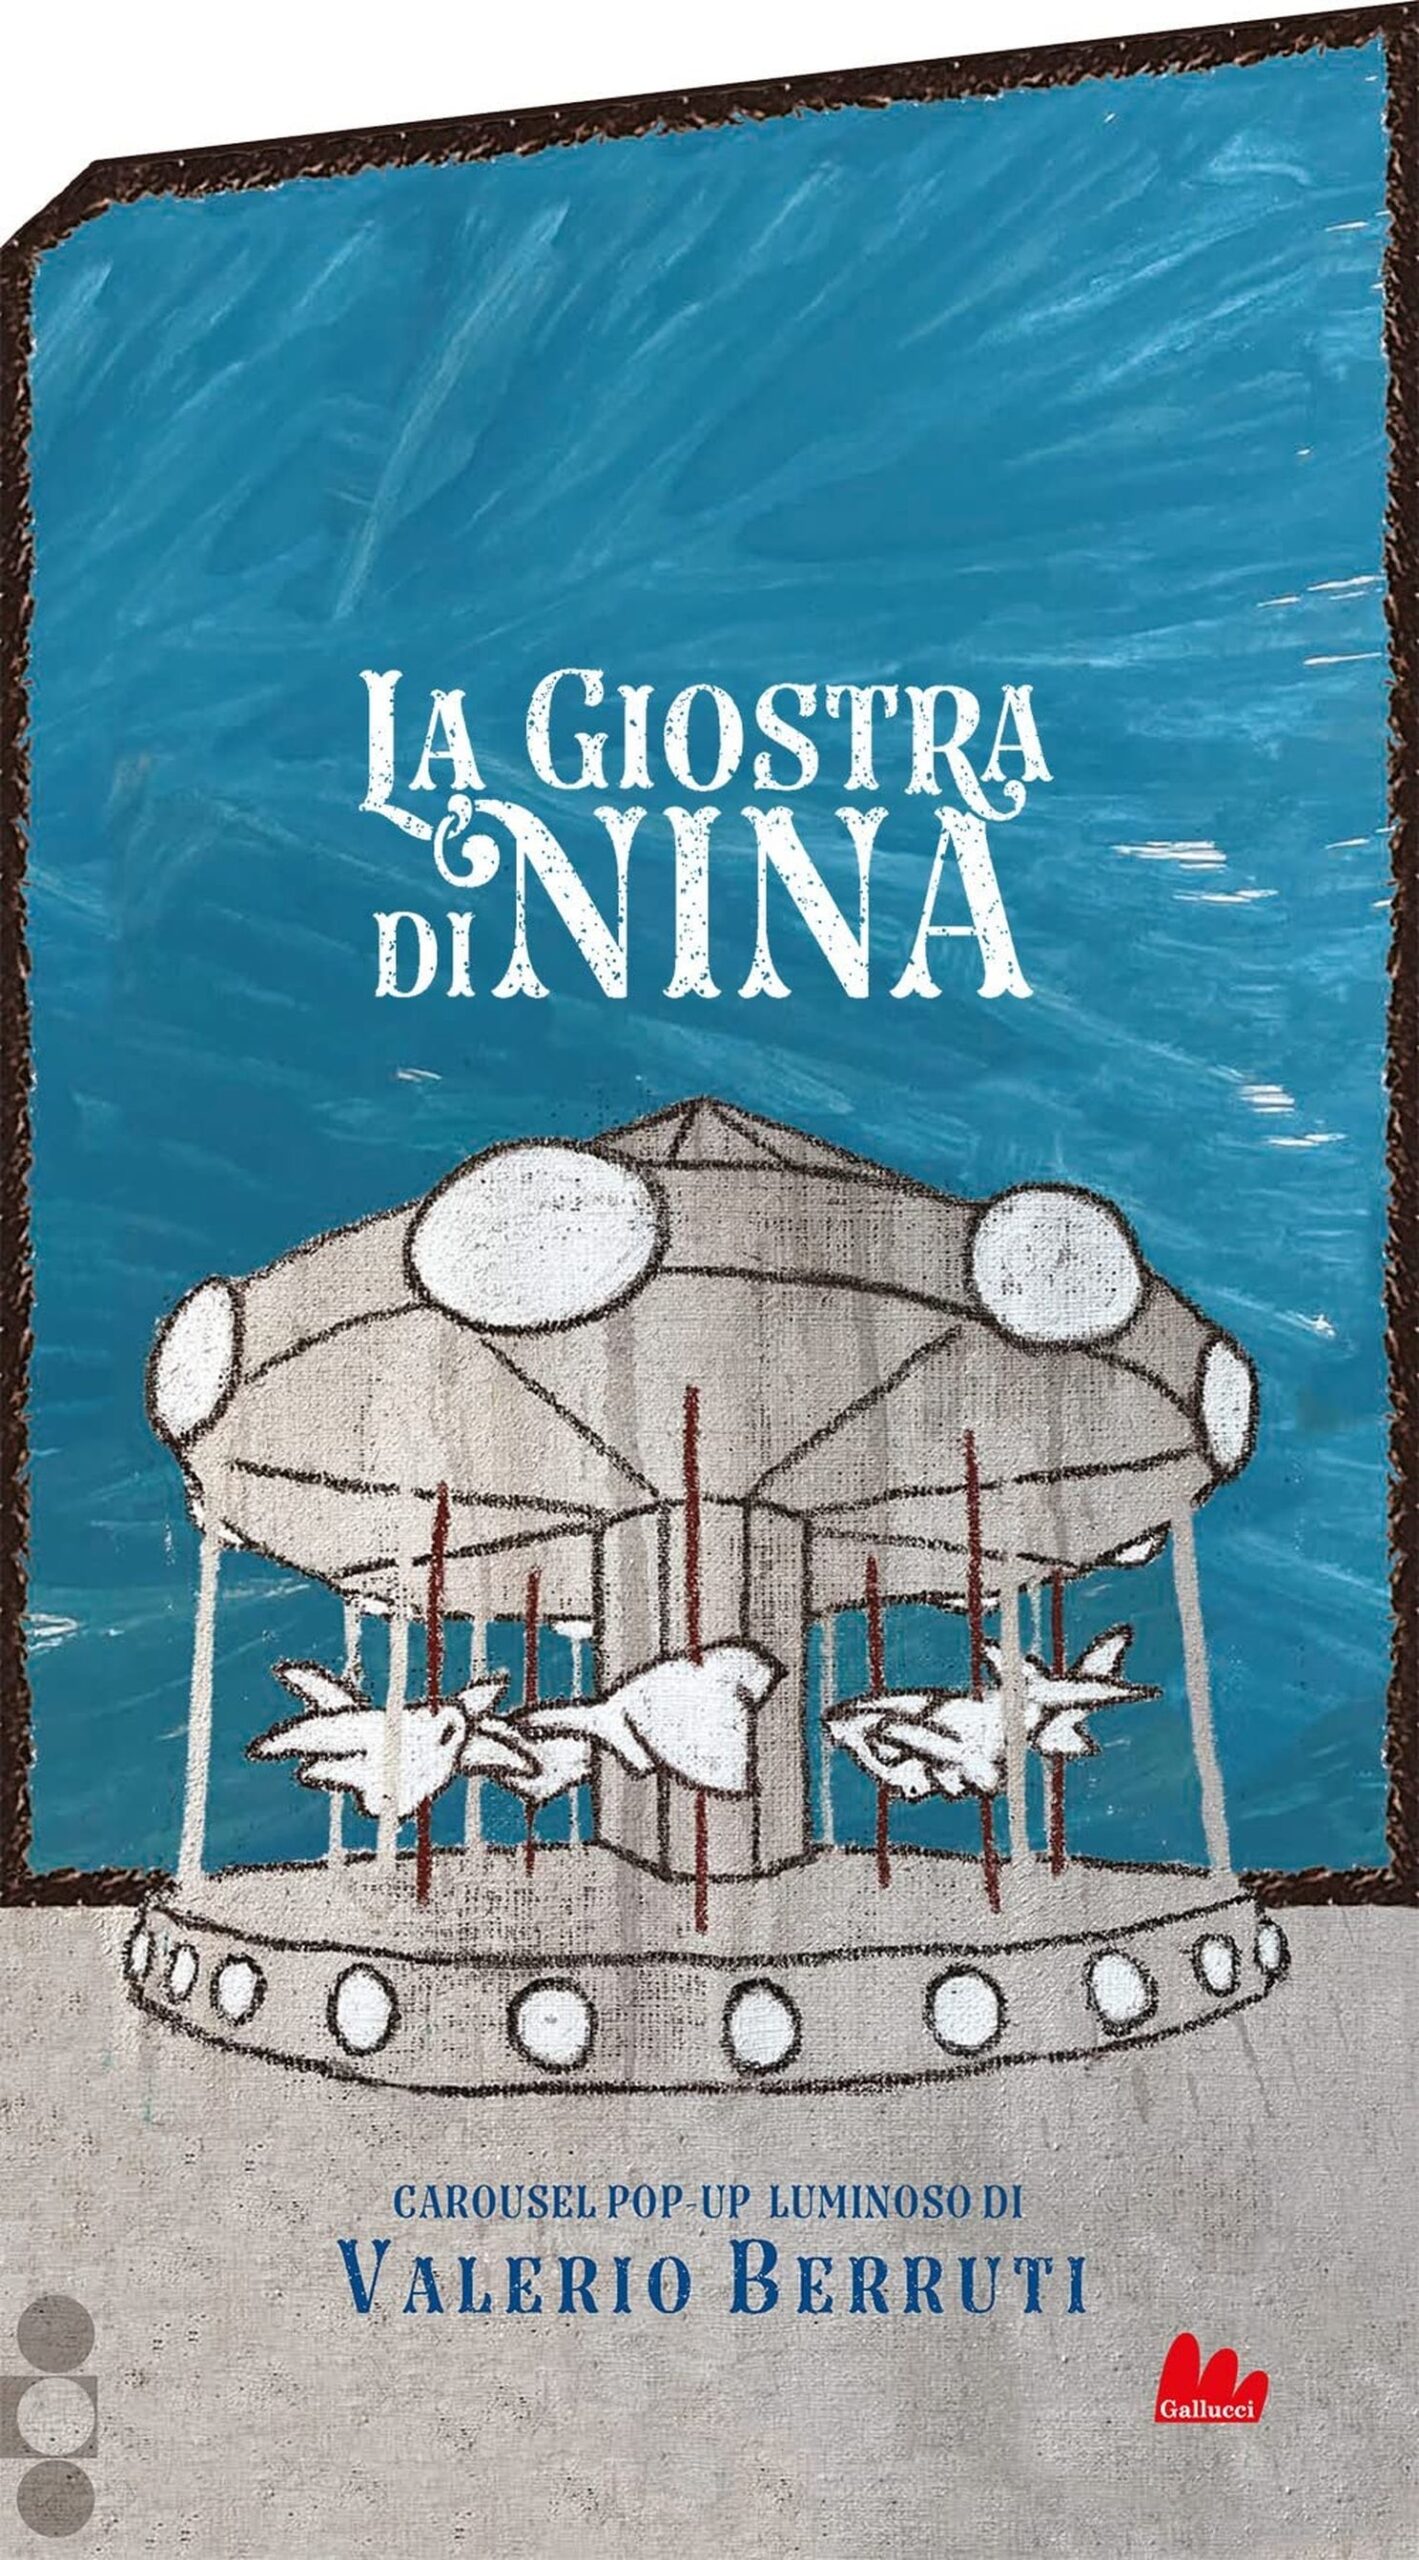 Valerio Berruti in collaborazione con Dario Cestaro – La giostra di Nina (Gallucci, Roma 2022)